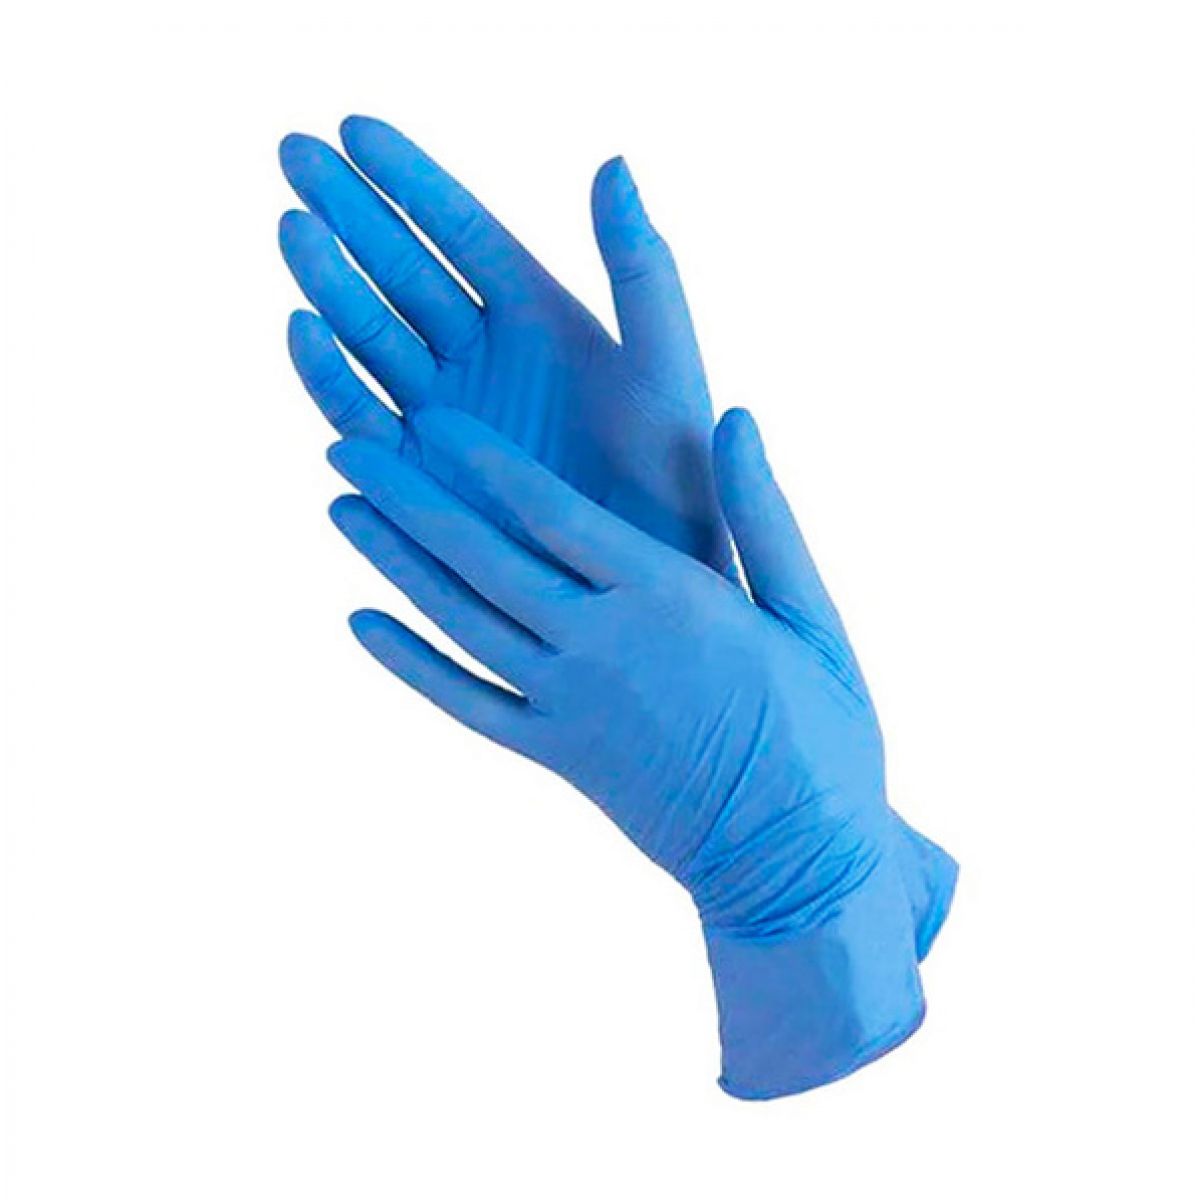 Купить перчатки l. Перчатки нитриловые connect Blue Nitrile. Перчатки Wally Plastic нитриловые. Перчатки нитриловые household Gloves. Перчатки Wally Plastic (нитрил-винил).